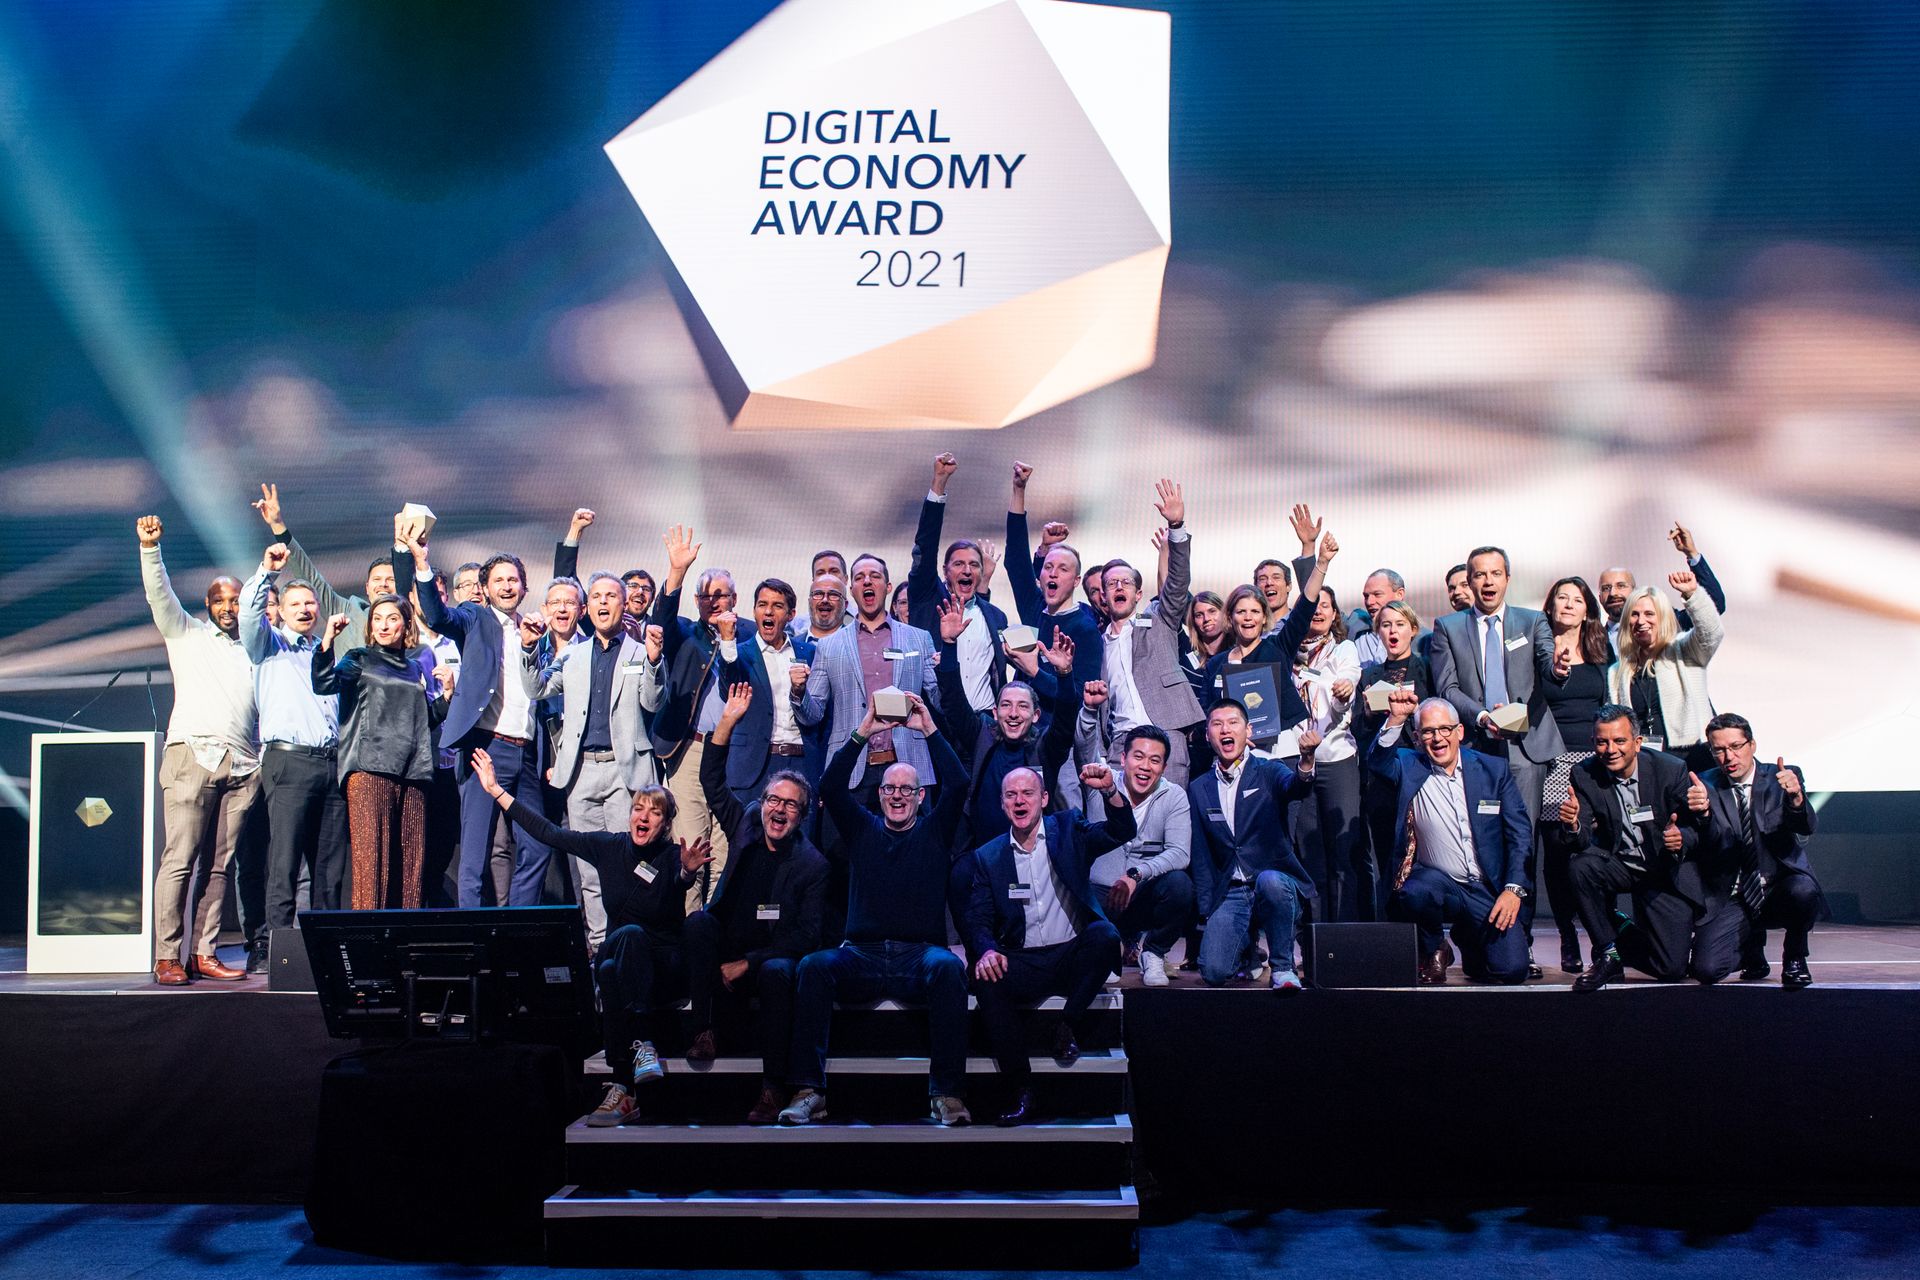 Tutti i vincitori alla cerimonia di premiazione dei "Digital Economy Award" in occasione della "Giornata Digitale Svizzera" del 10 novembre 2021